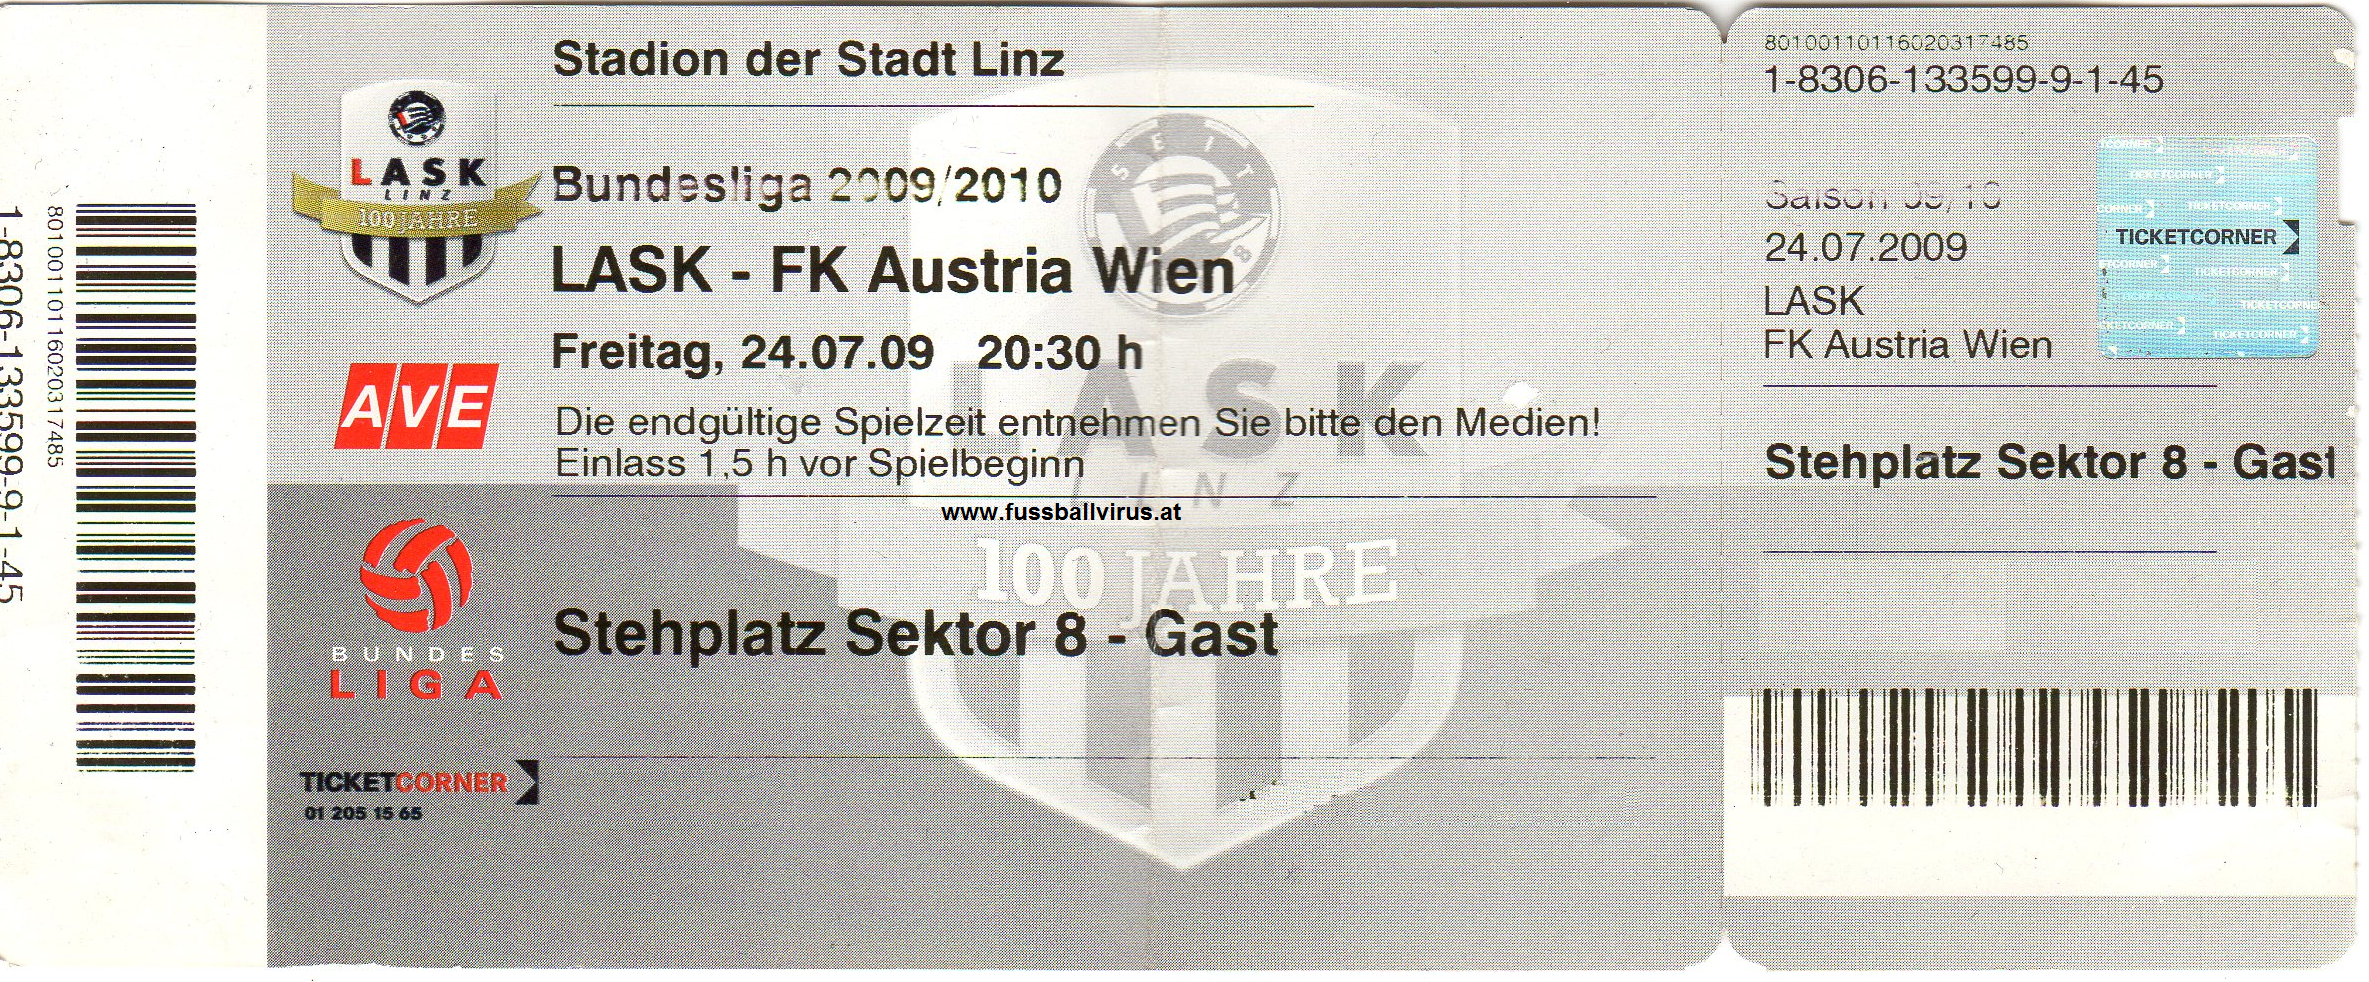 24.7. LASK - FK Austria Wien